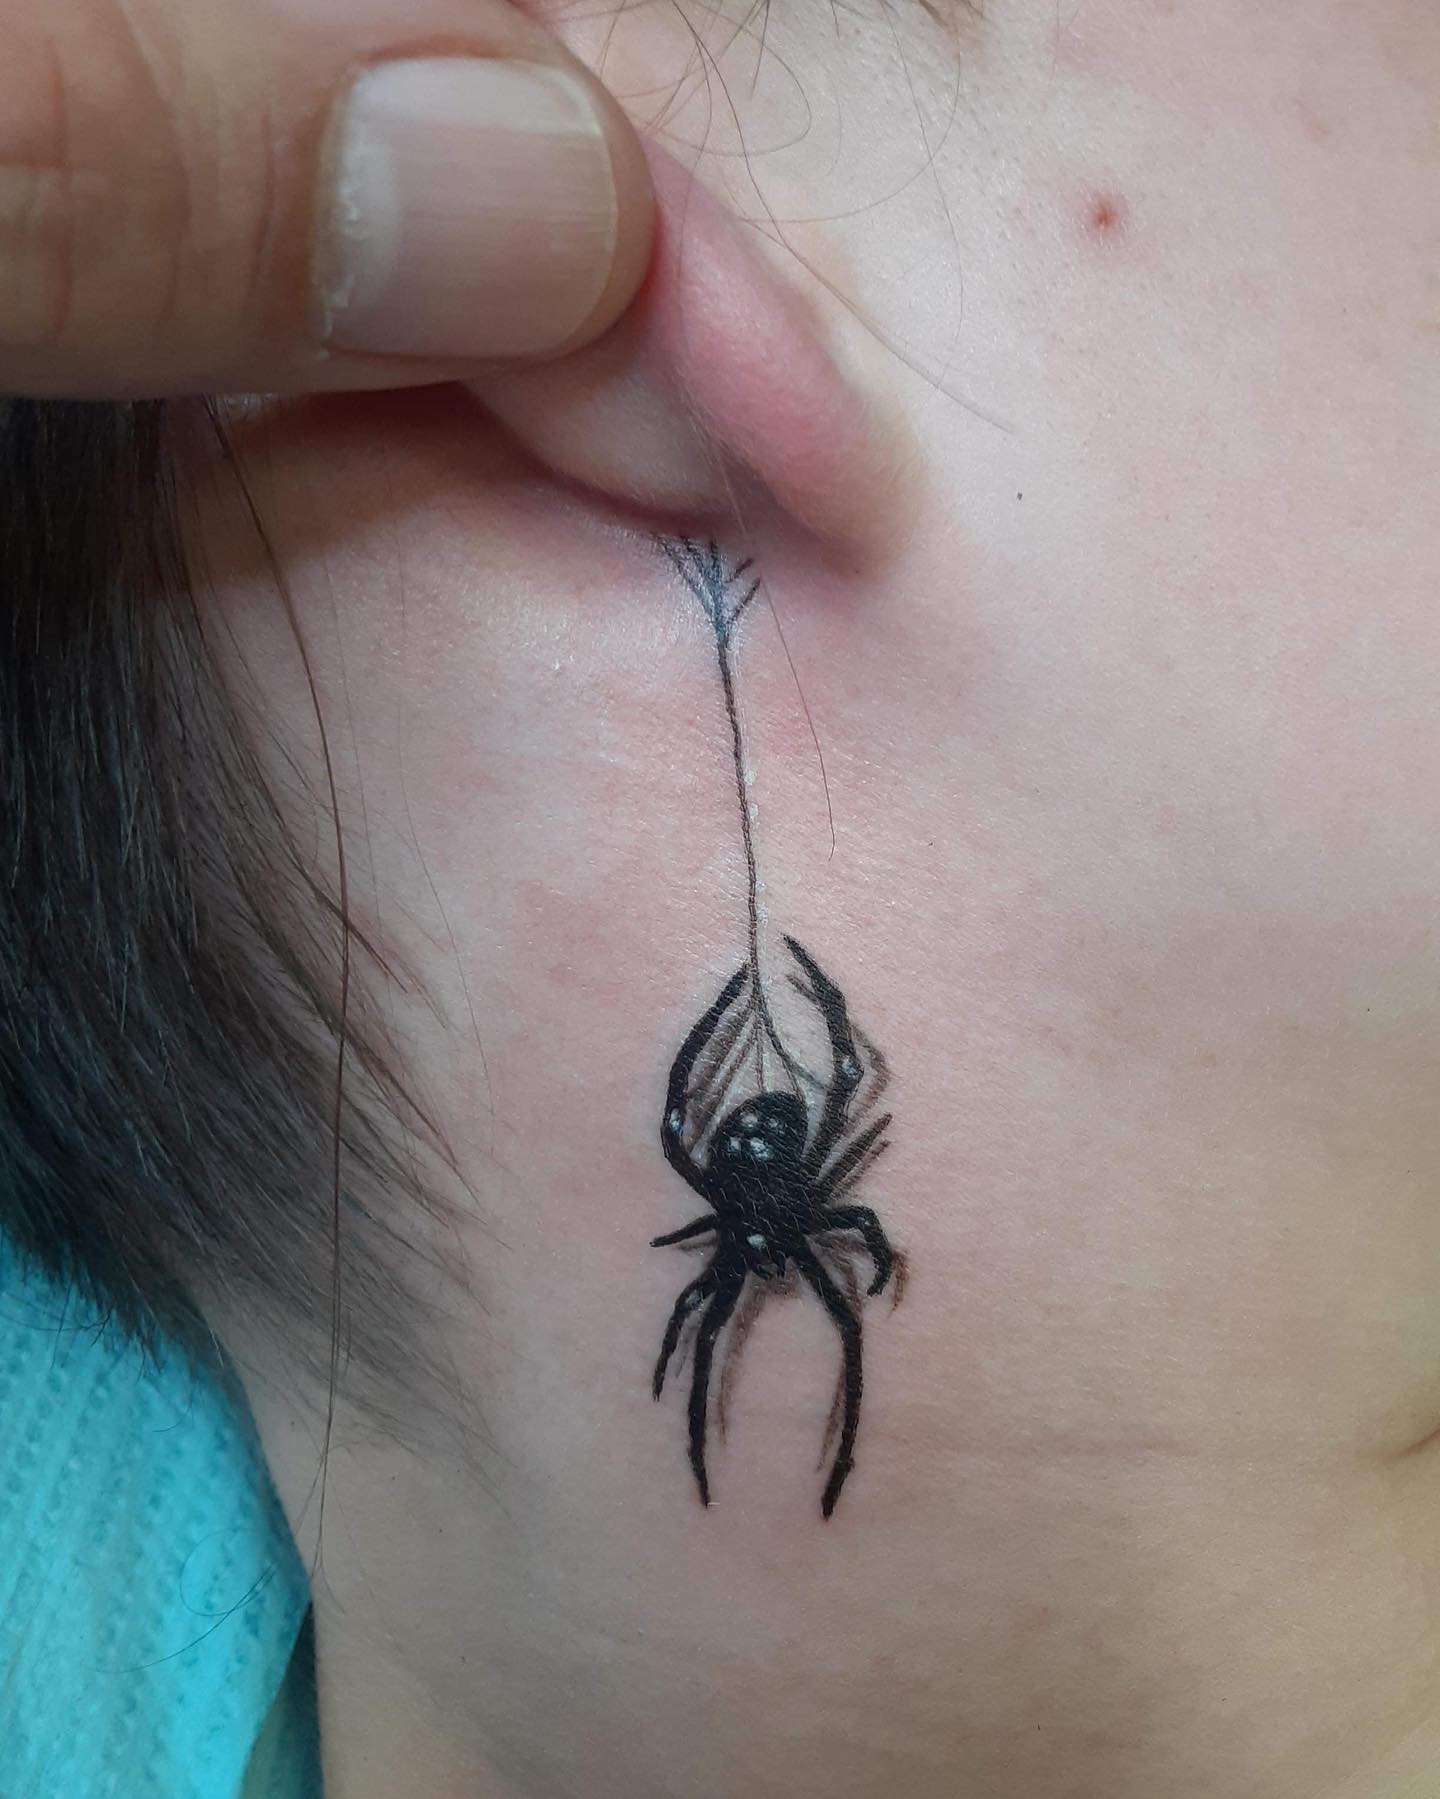 Old School Neck Spider Tattoo by Justin Hartman